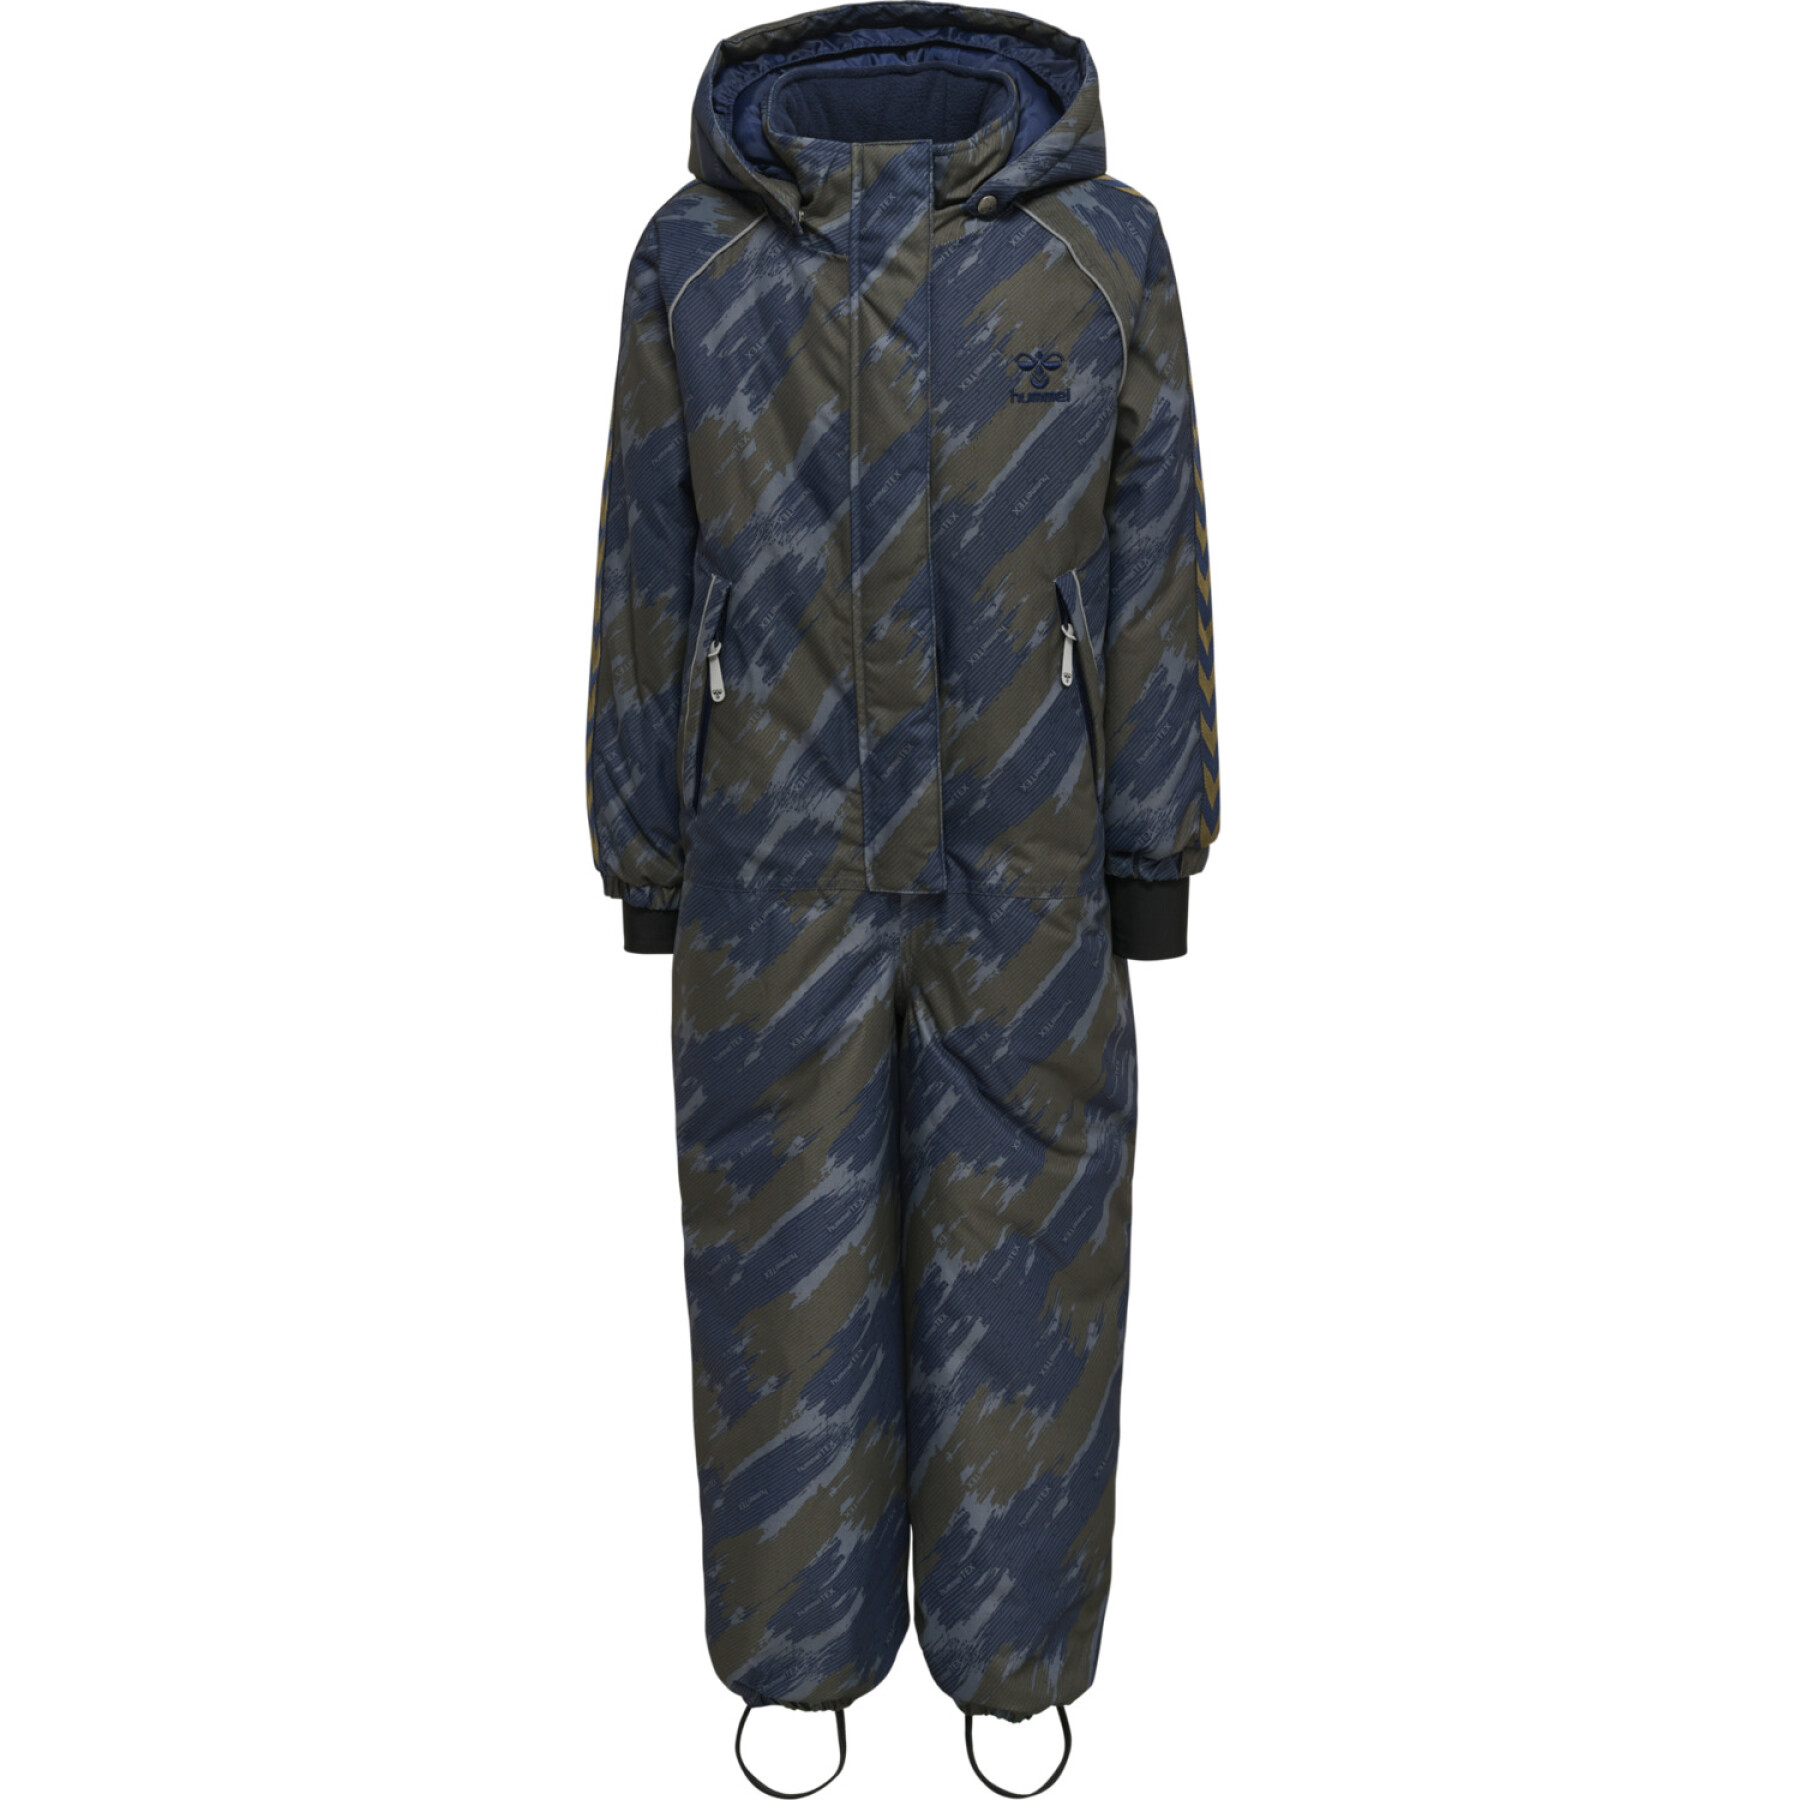 Waterproof suit for children Hummel Artic Tex